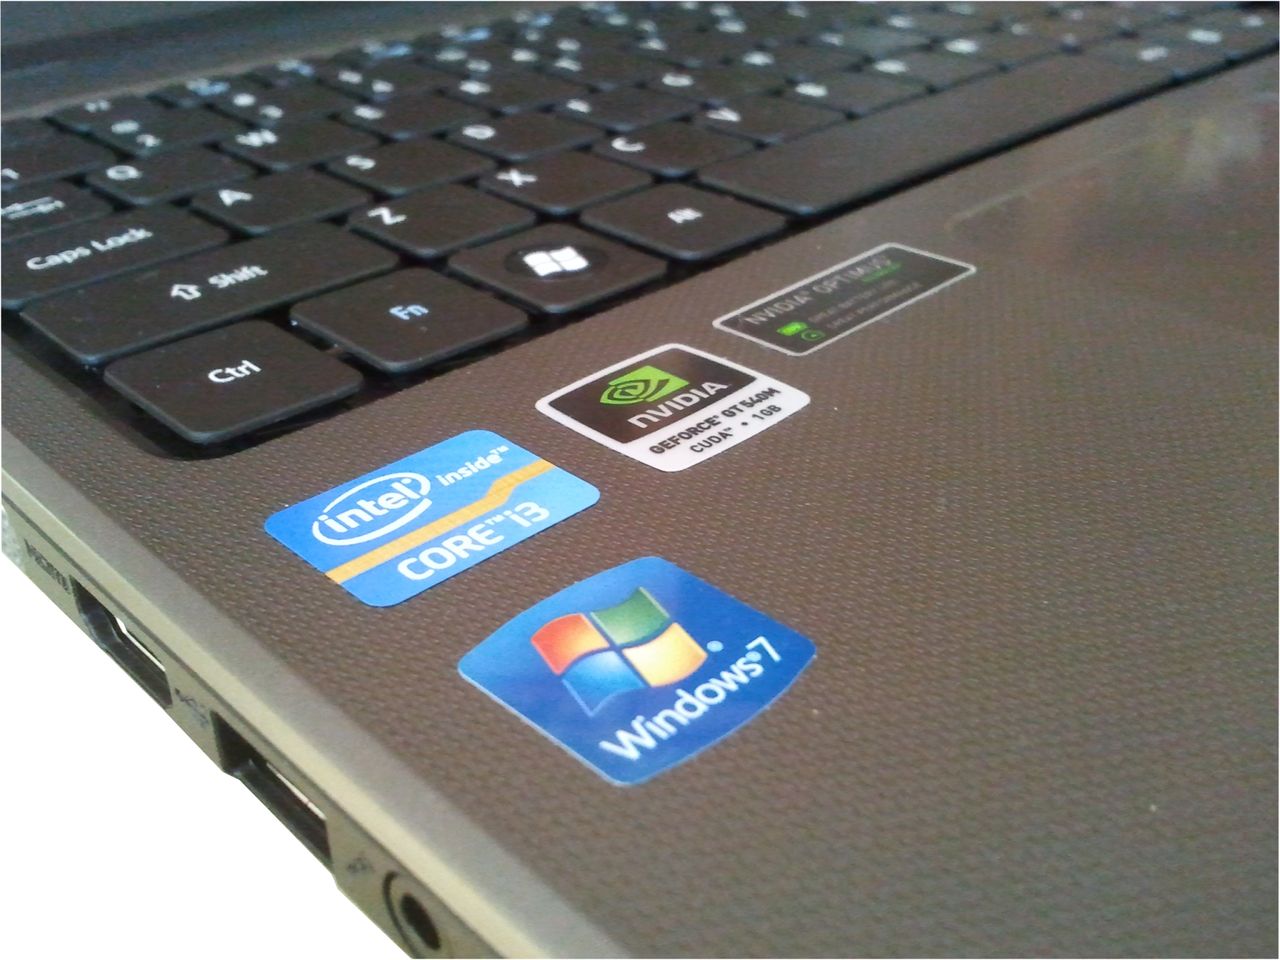 Acer Aspire 5750G - laptop do gier do 2500 zł [test cz. 2]